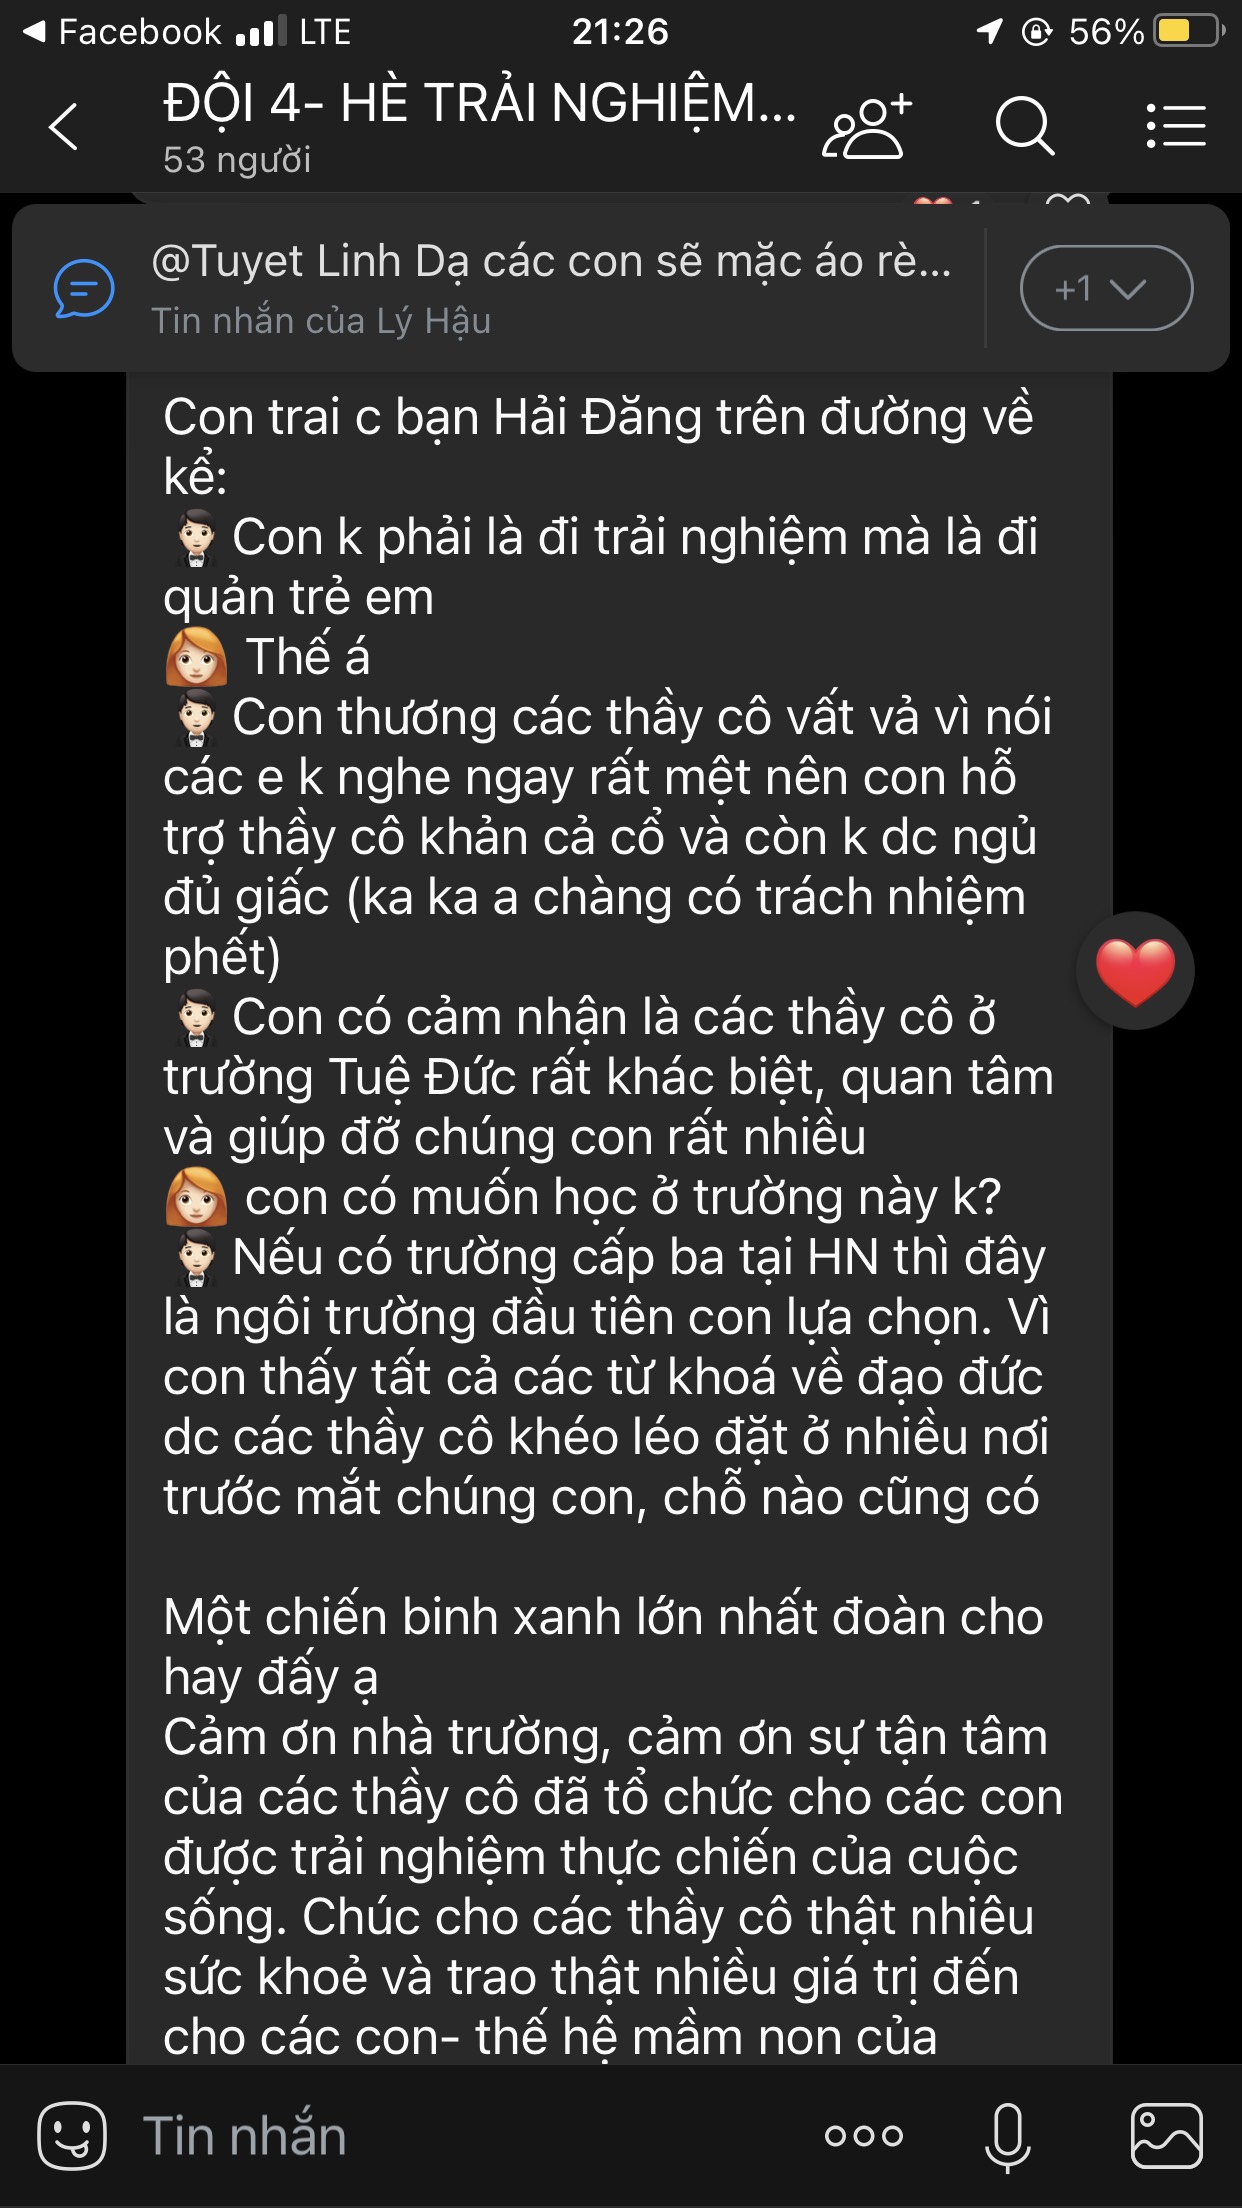 Cam nhan cua PH (17)